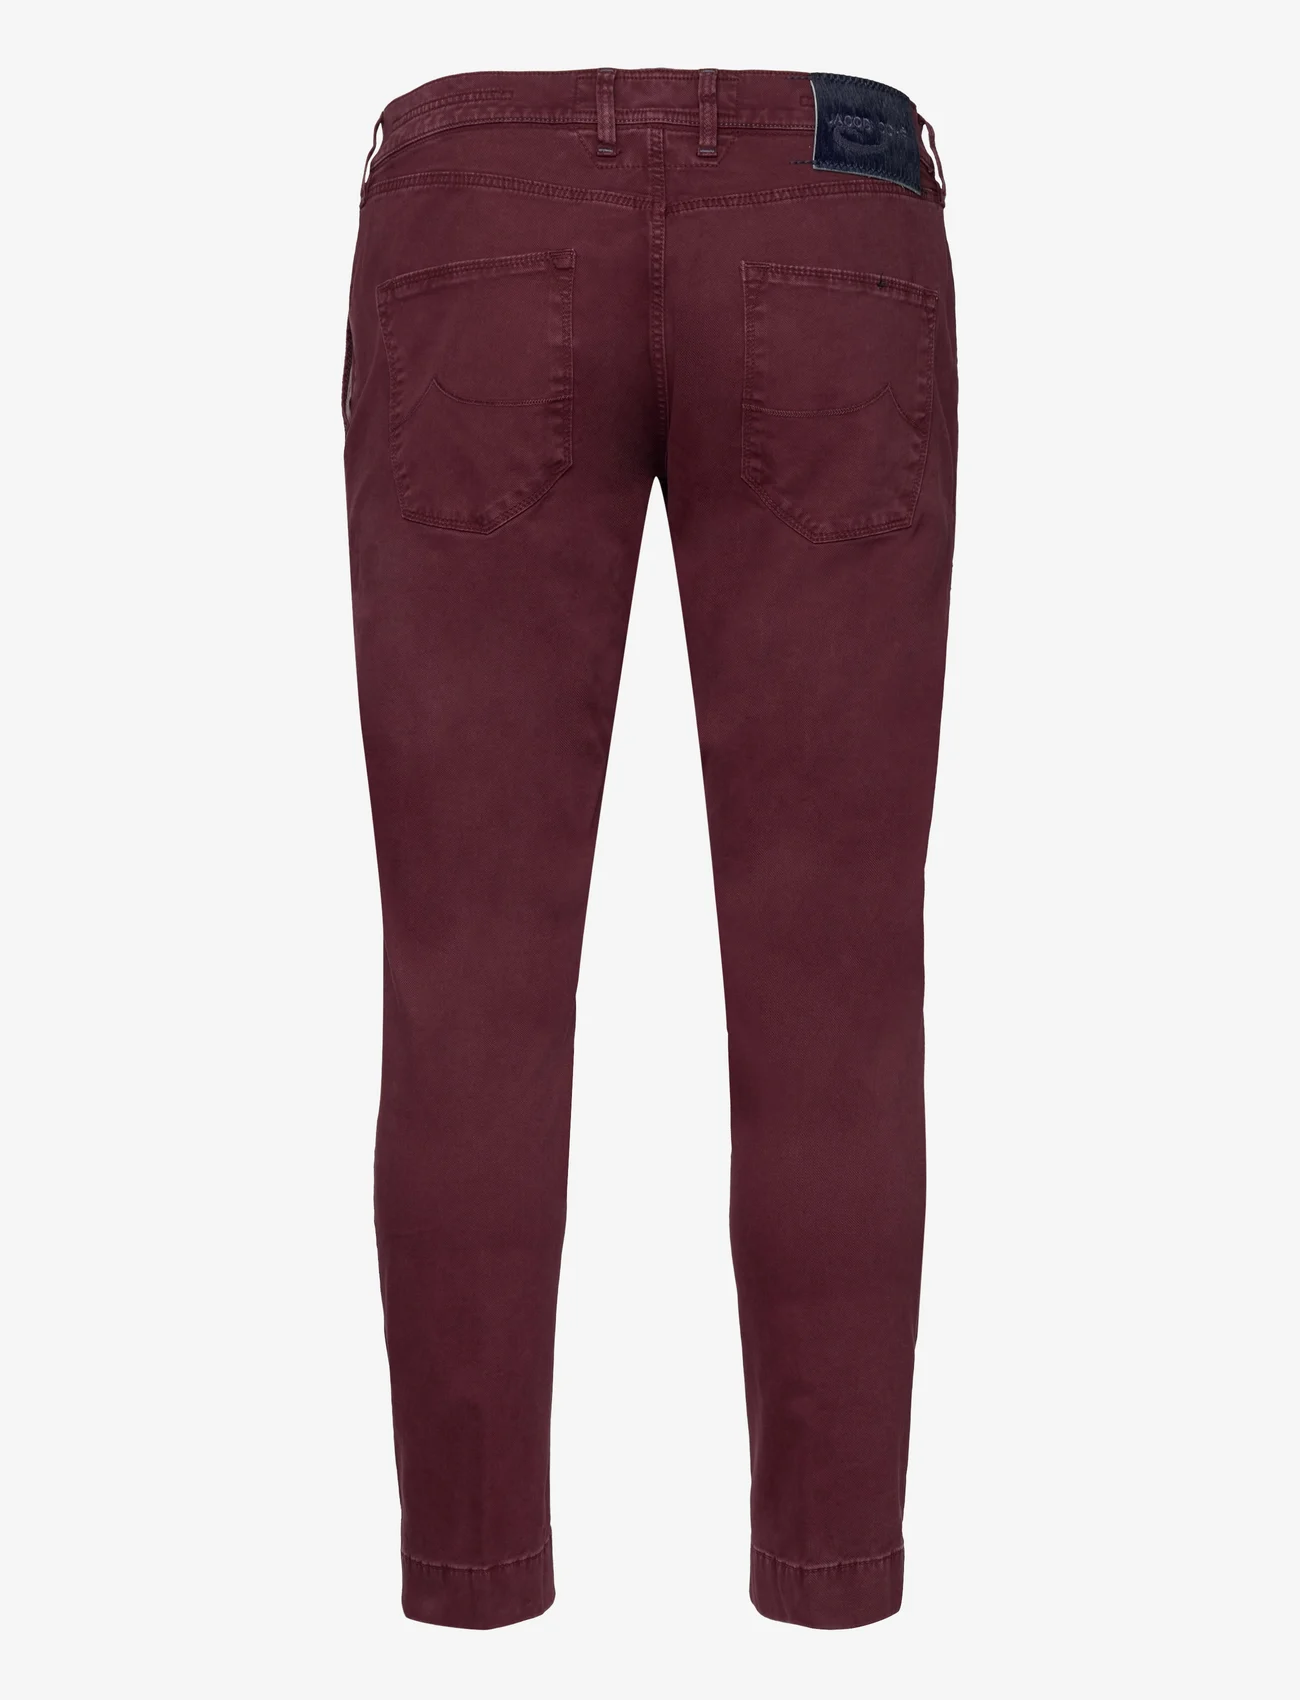 Jacob Cohen - 5P COMFORT PPT STR VINTAGE - regular jeans - burgundy - 1